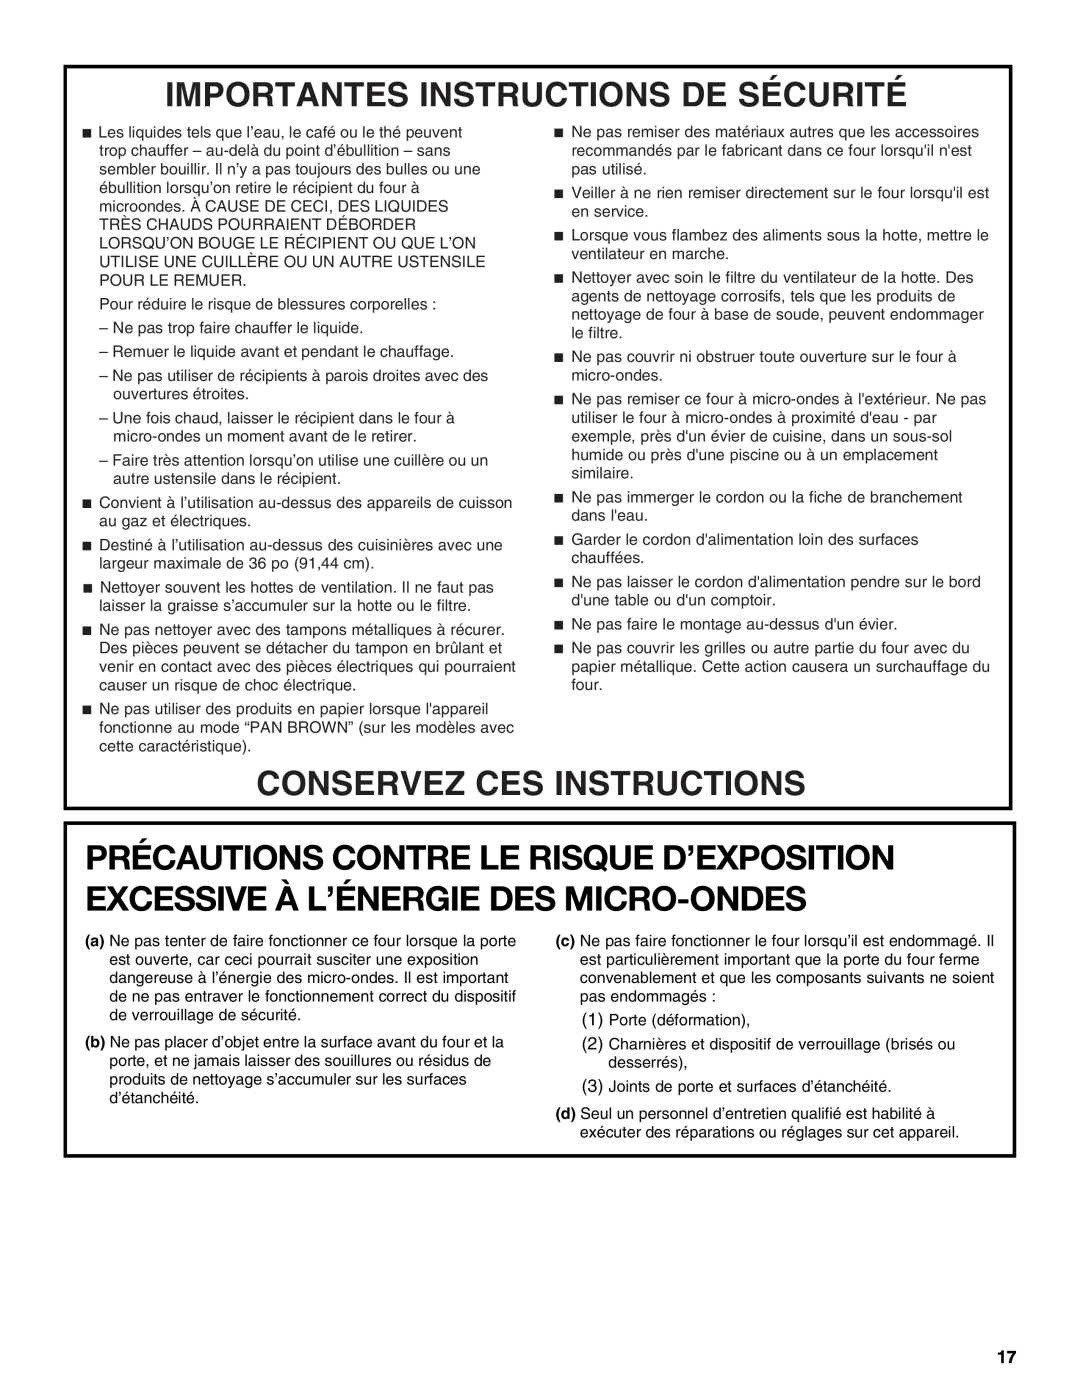 Whirlpool IMH16XS manual Importantes Instructions De Sécurité, Conservez Ces Instructions 